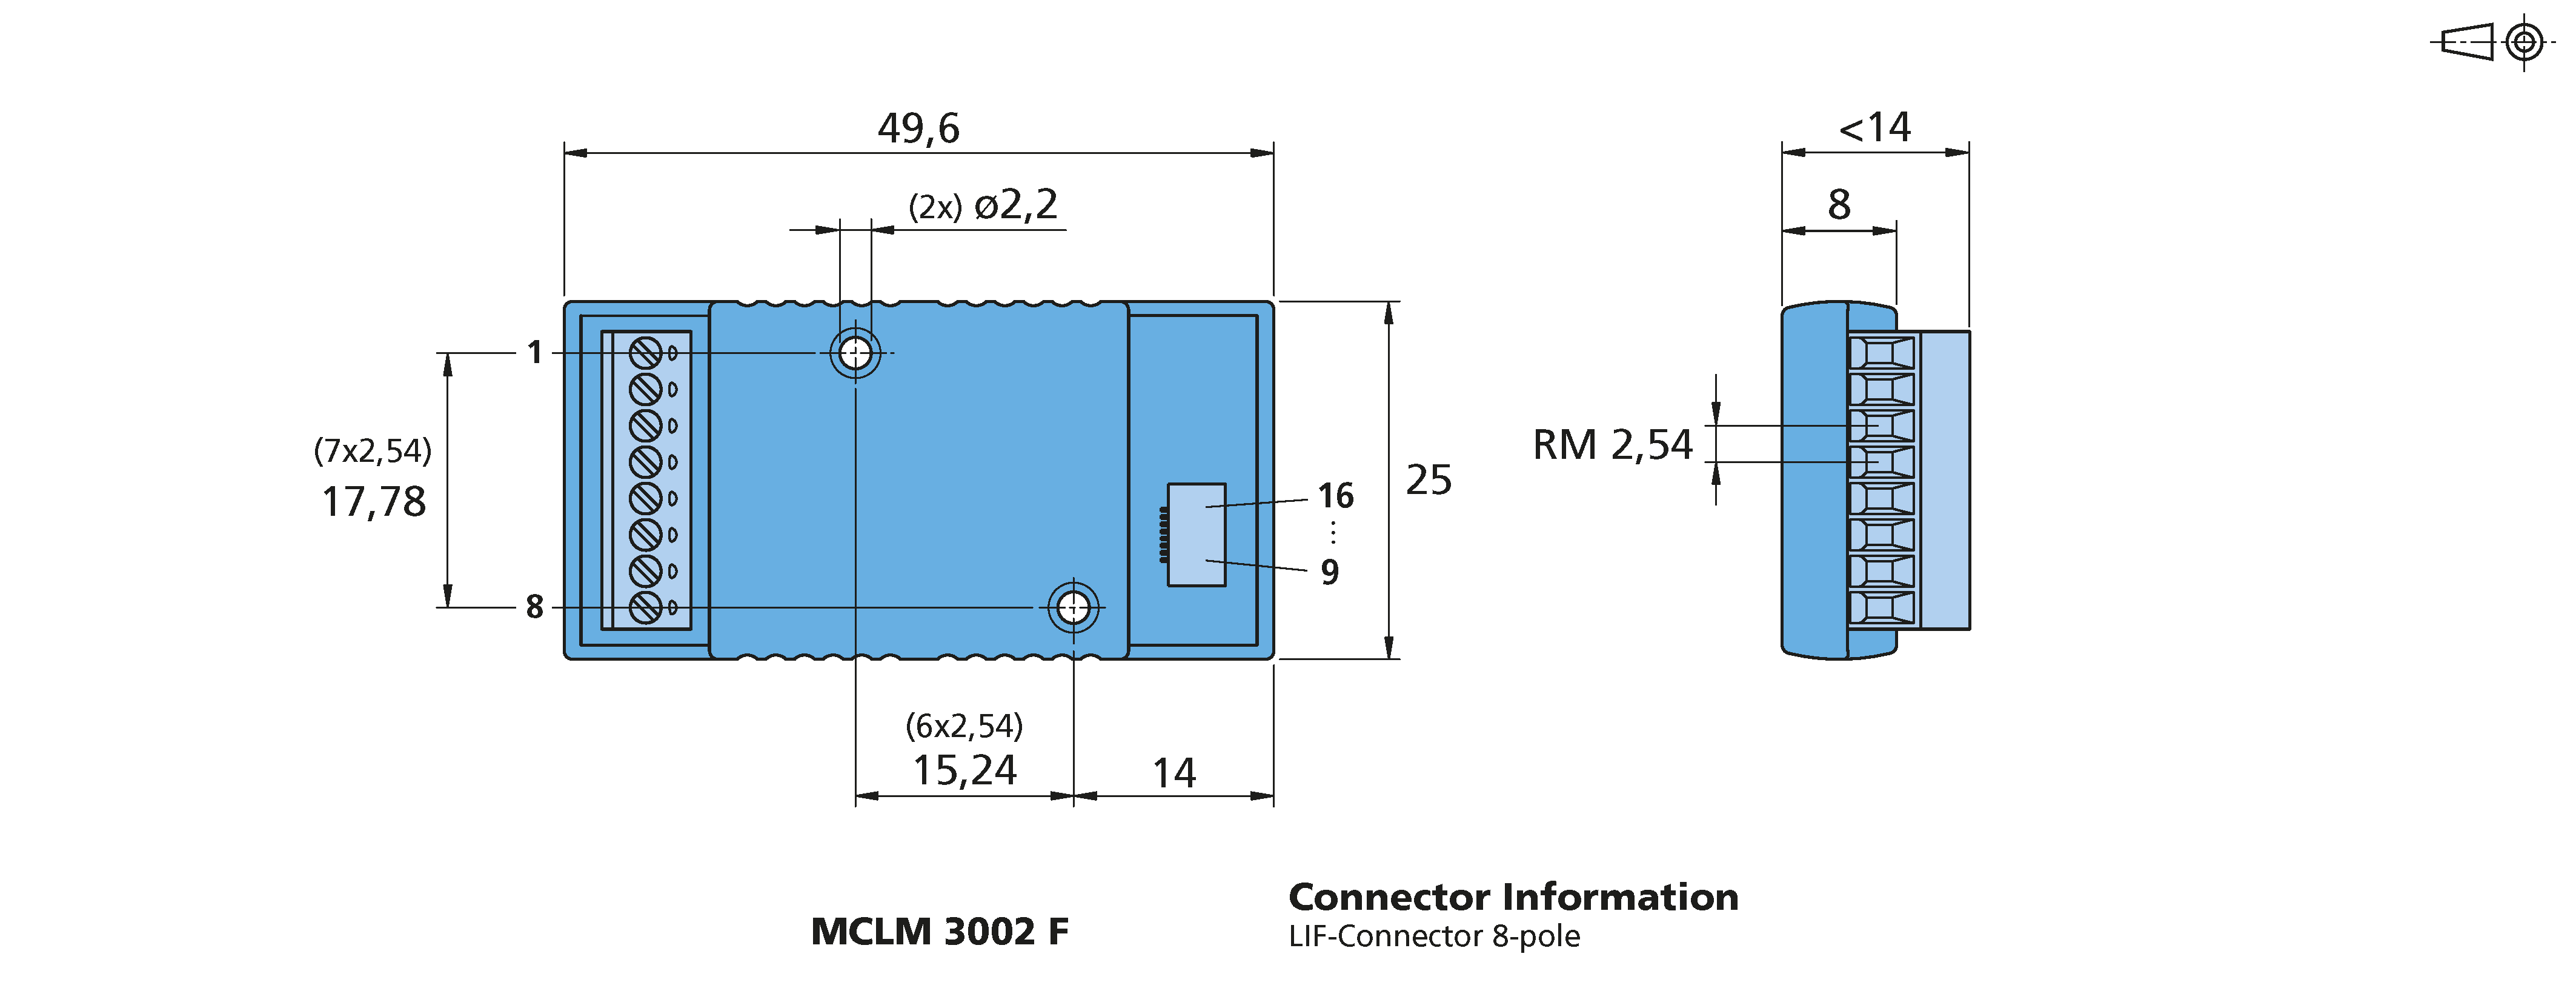 ドライブエレクトロニクス Series MCLM 3002 F